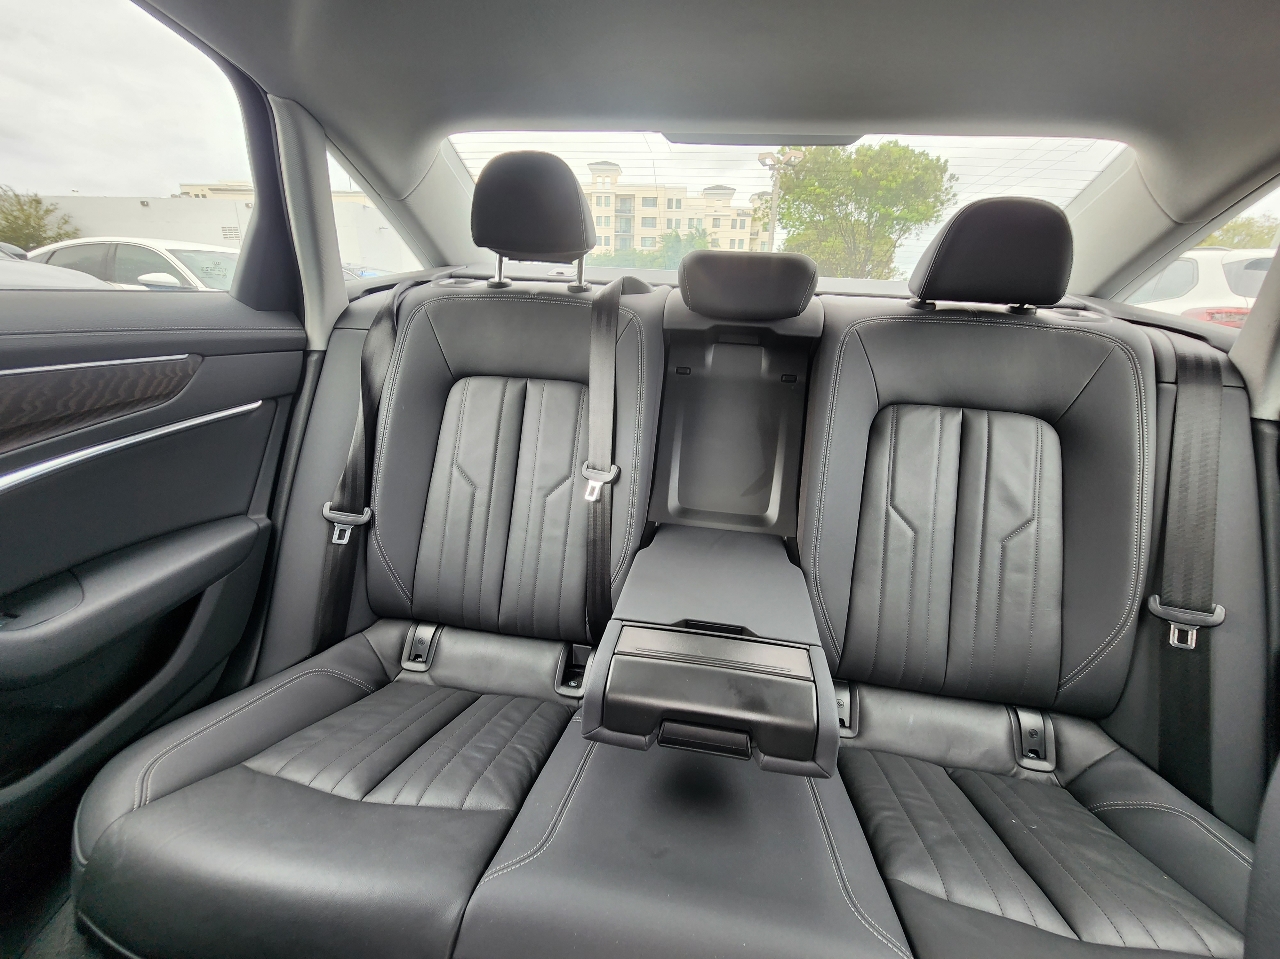 2019 AUDI A6 Sedan - $27,999